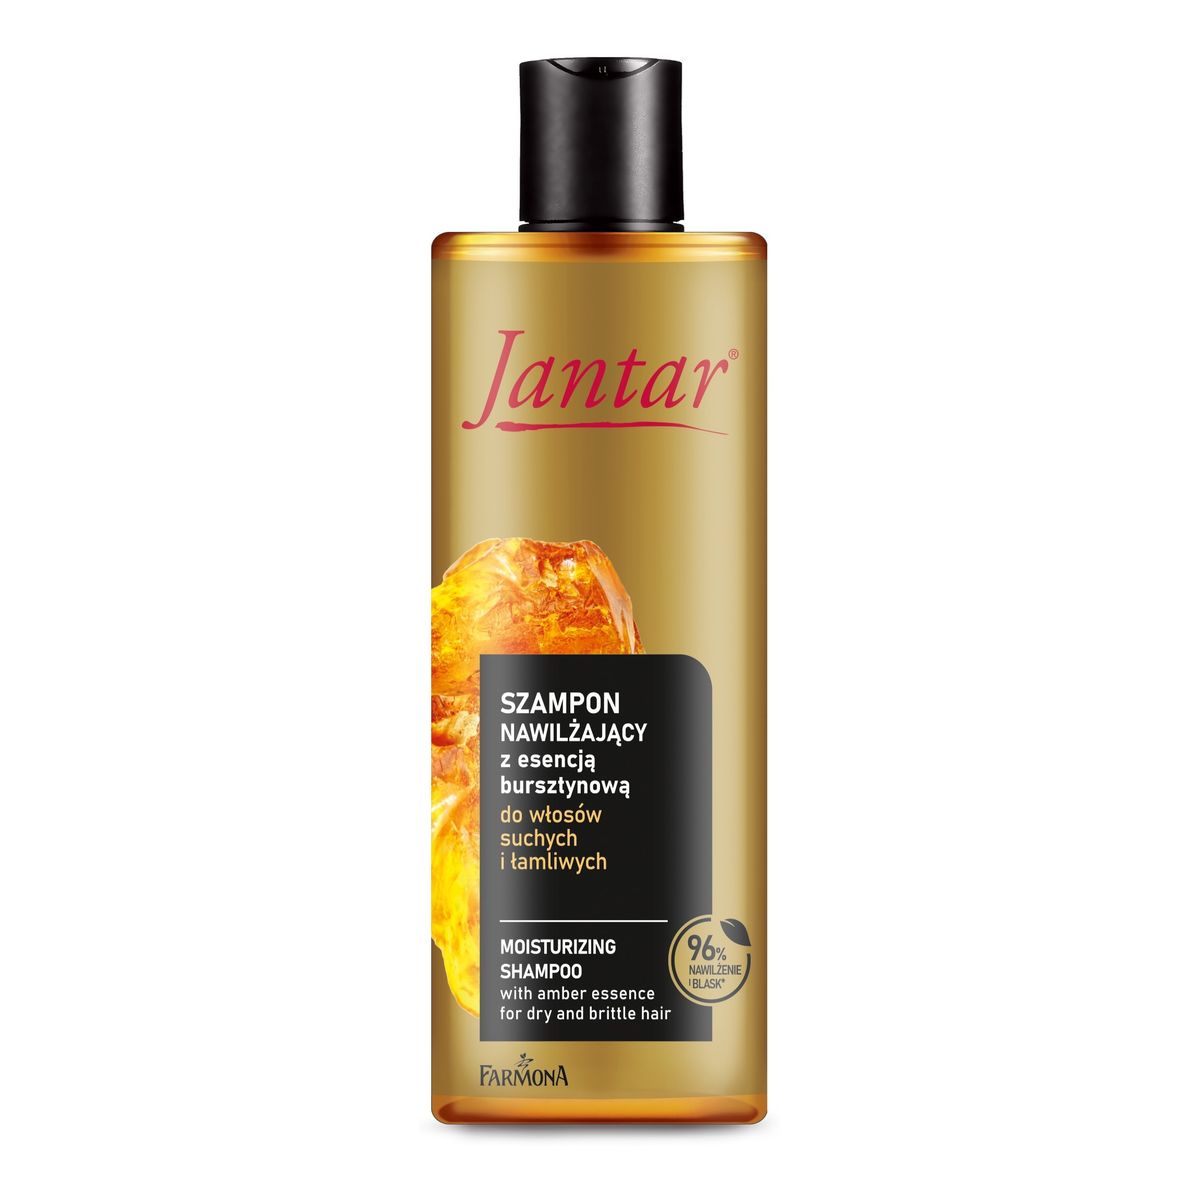 Farmona Jantar szampon nawilżający z esencją bursztynową do włosów suchych i łamliwych 300 ml 300ml